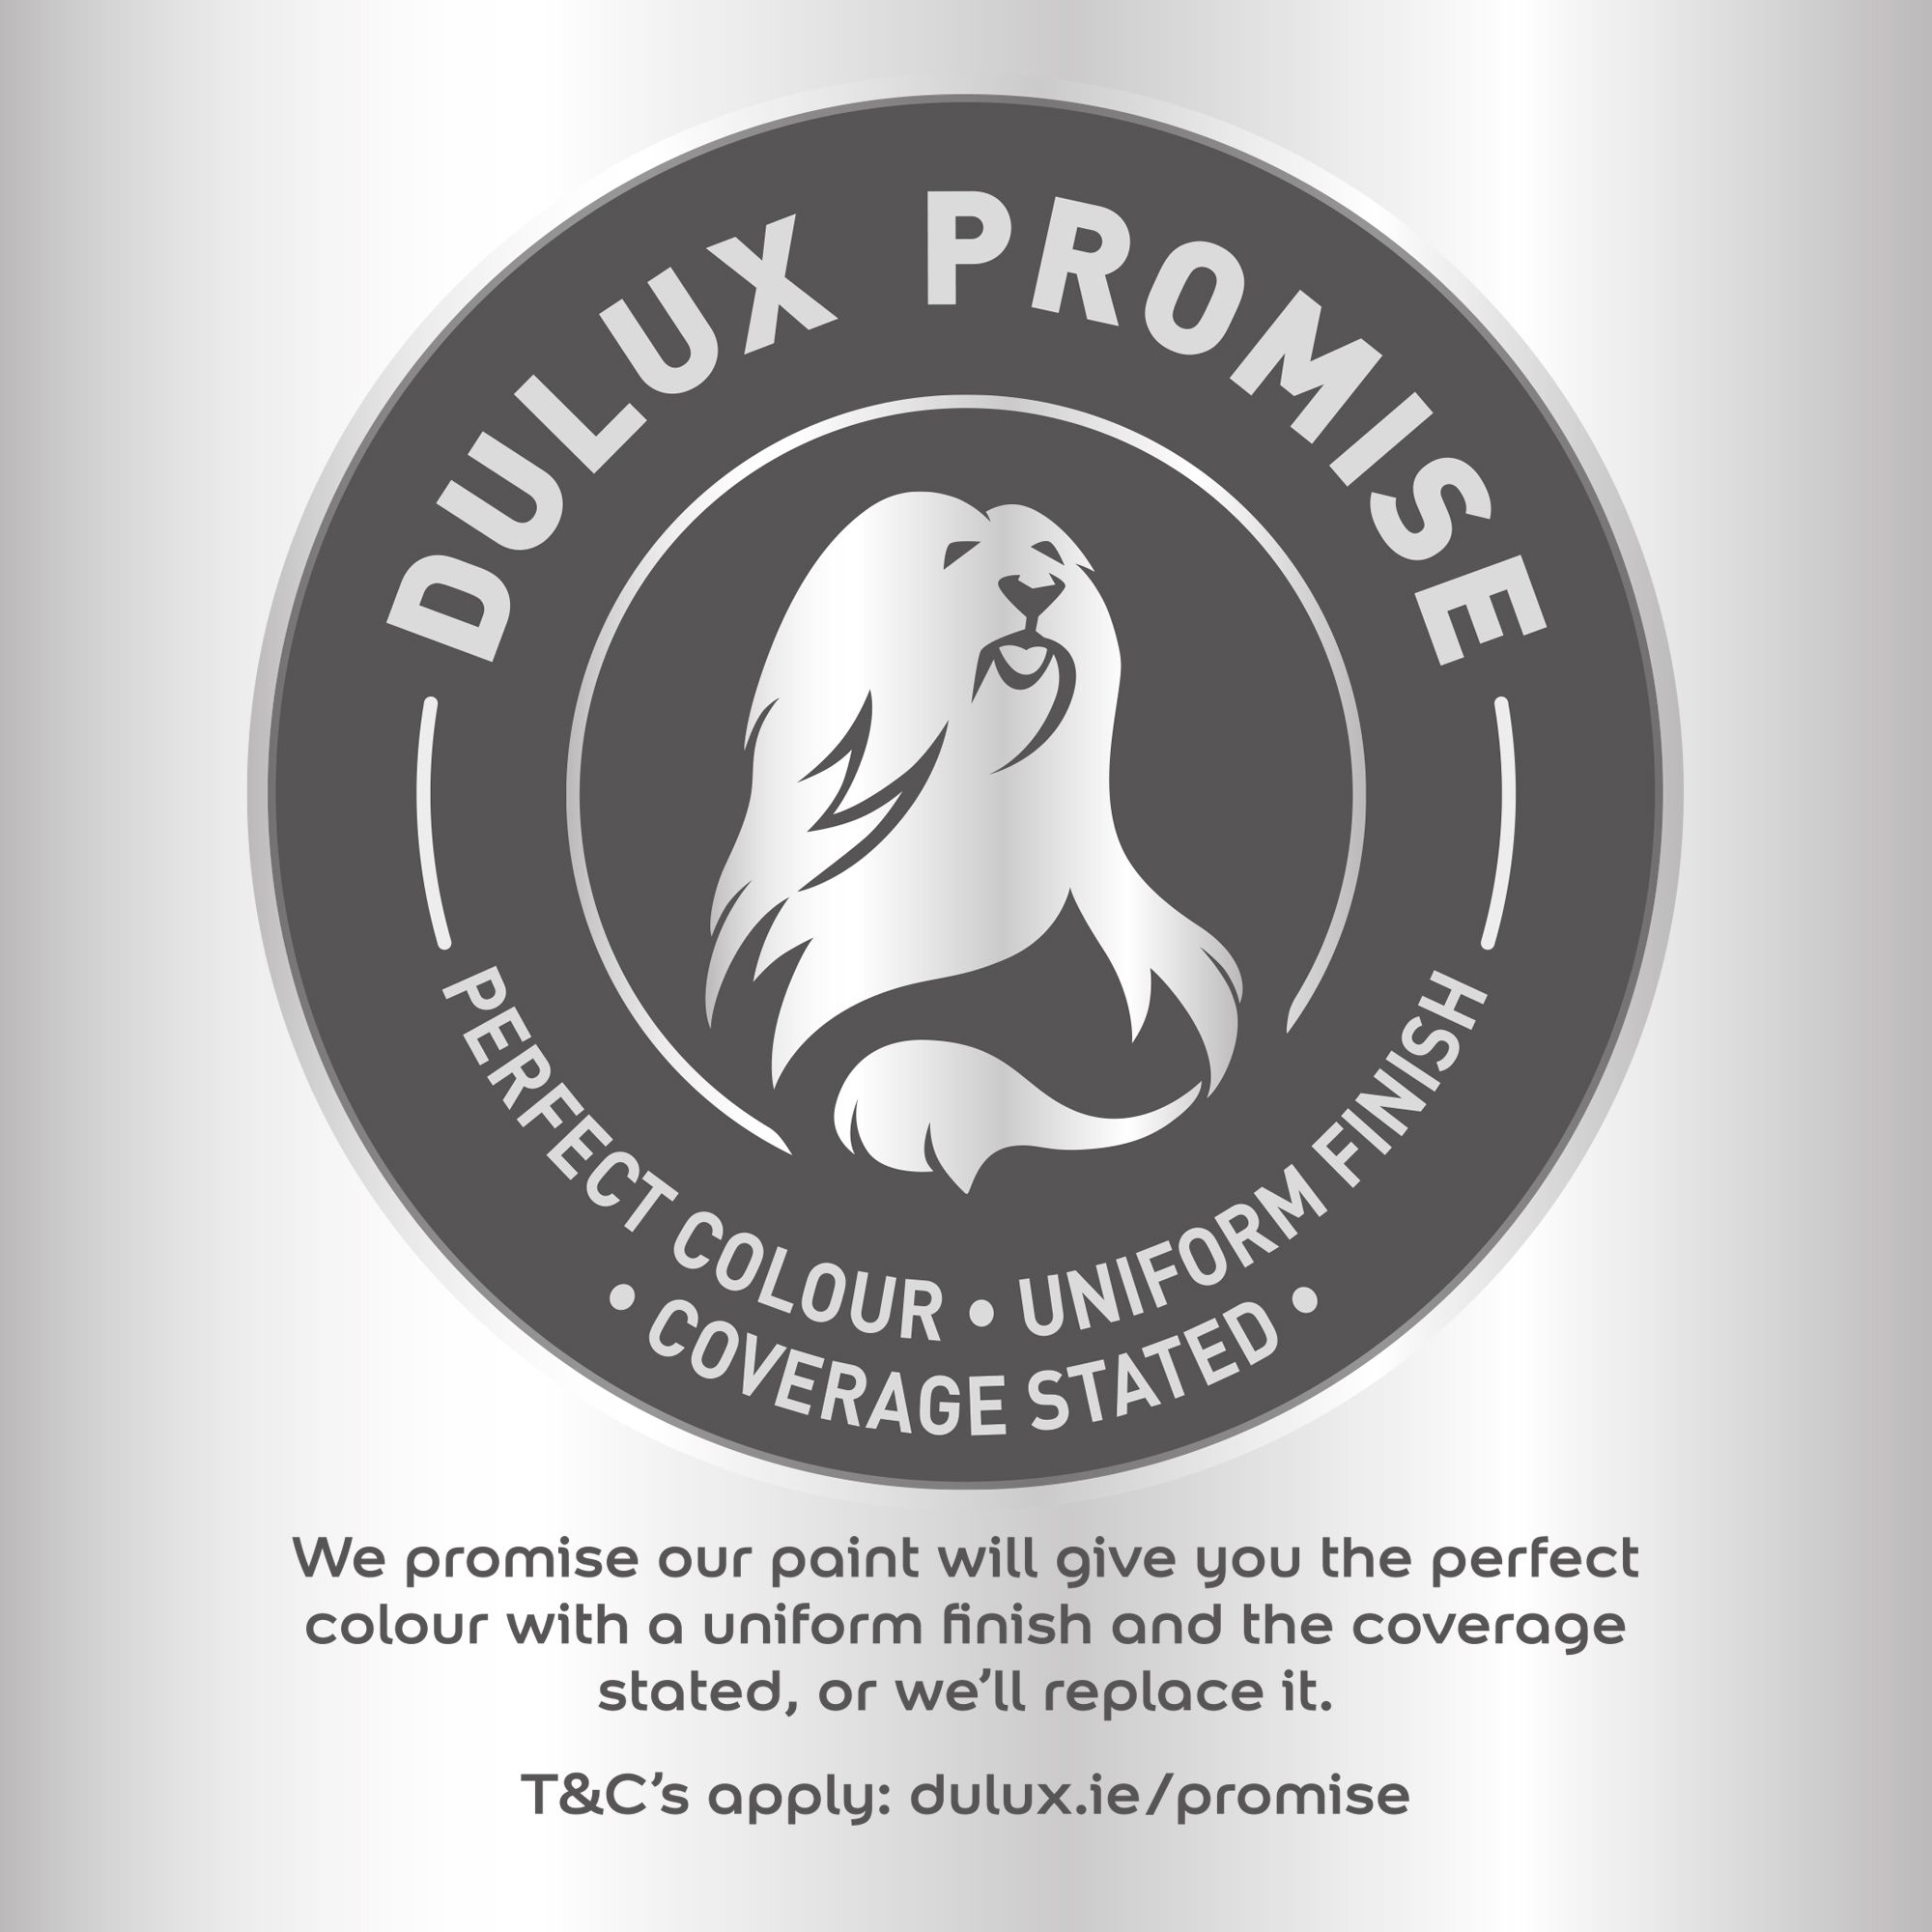 Dulux Easycare Cookie dough Flat matt Emulsion paint, 2.5L